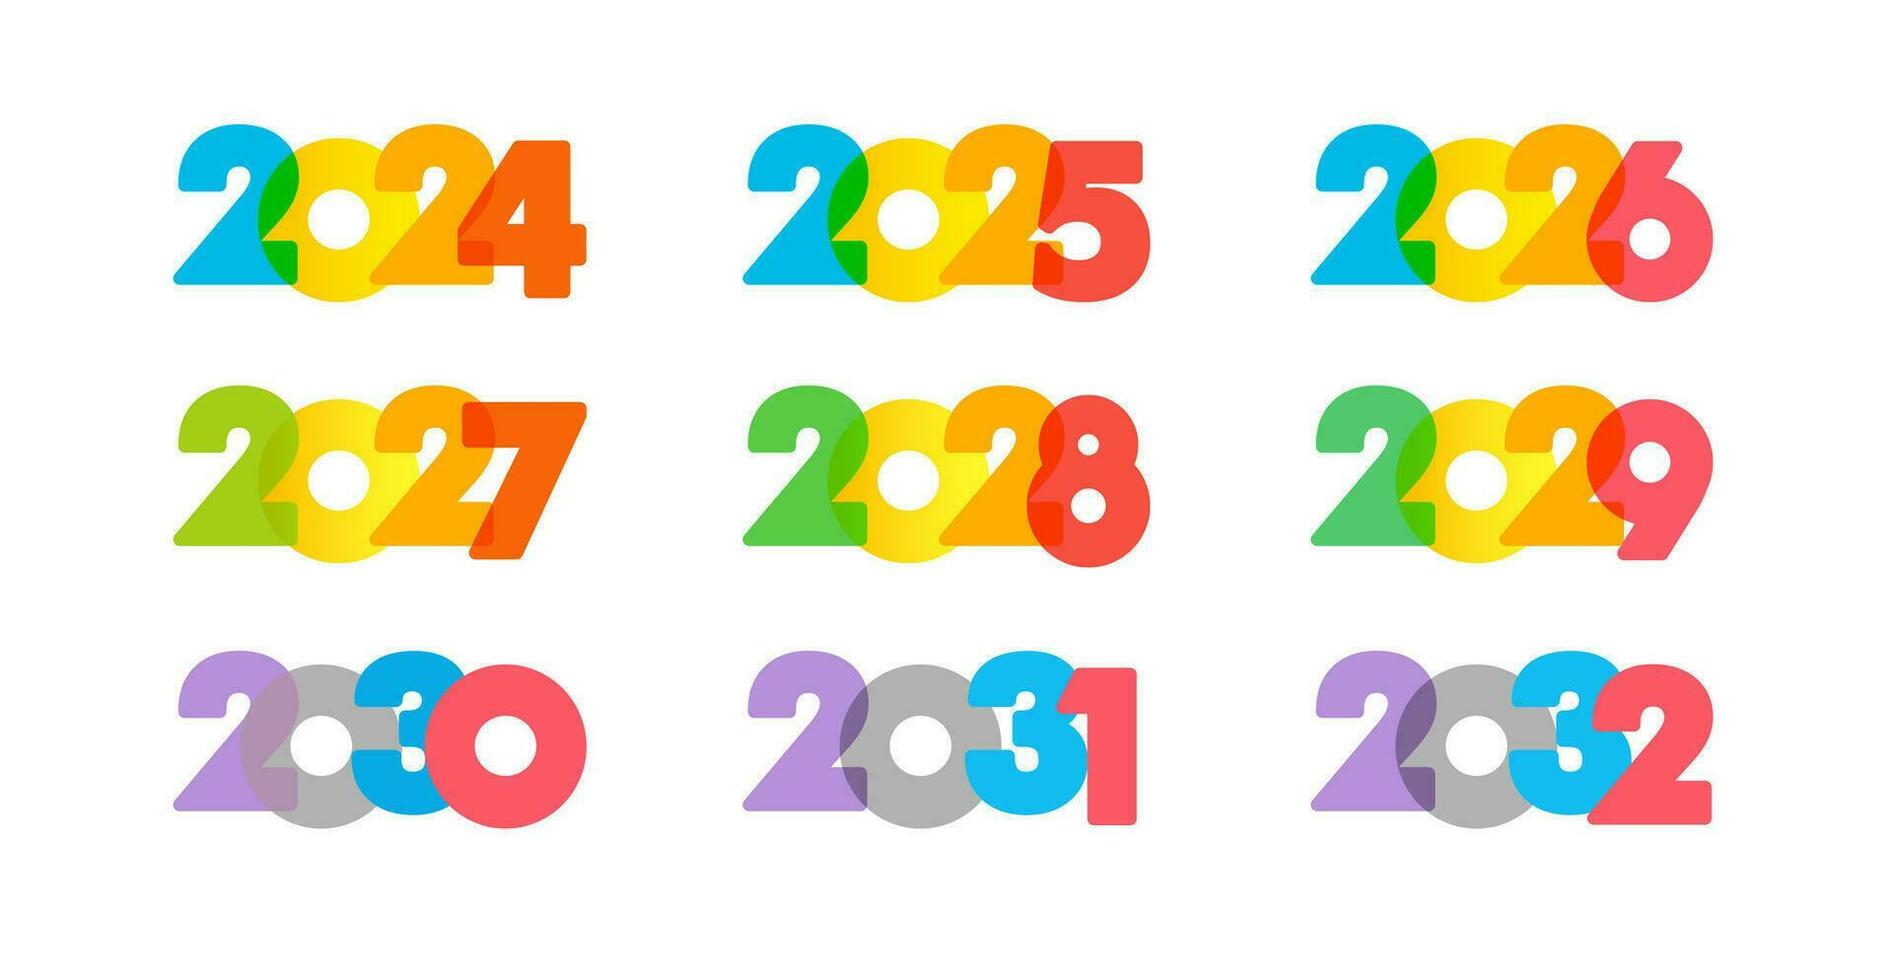 impostato di creativo numeri a partire dal 2024 per 2032. creativo icone 2025, 2026, 2027, 2028, 2029, 2030 e 2031 logo. calendario o progettista copertina design. isolato elementi. colorato concetto. vettore